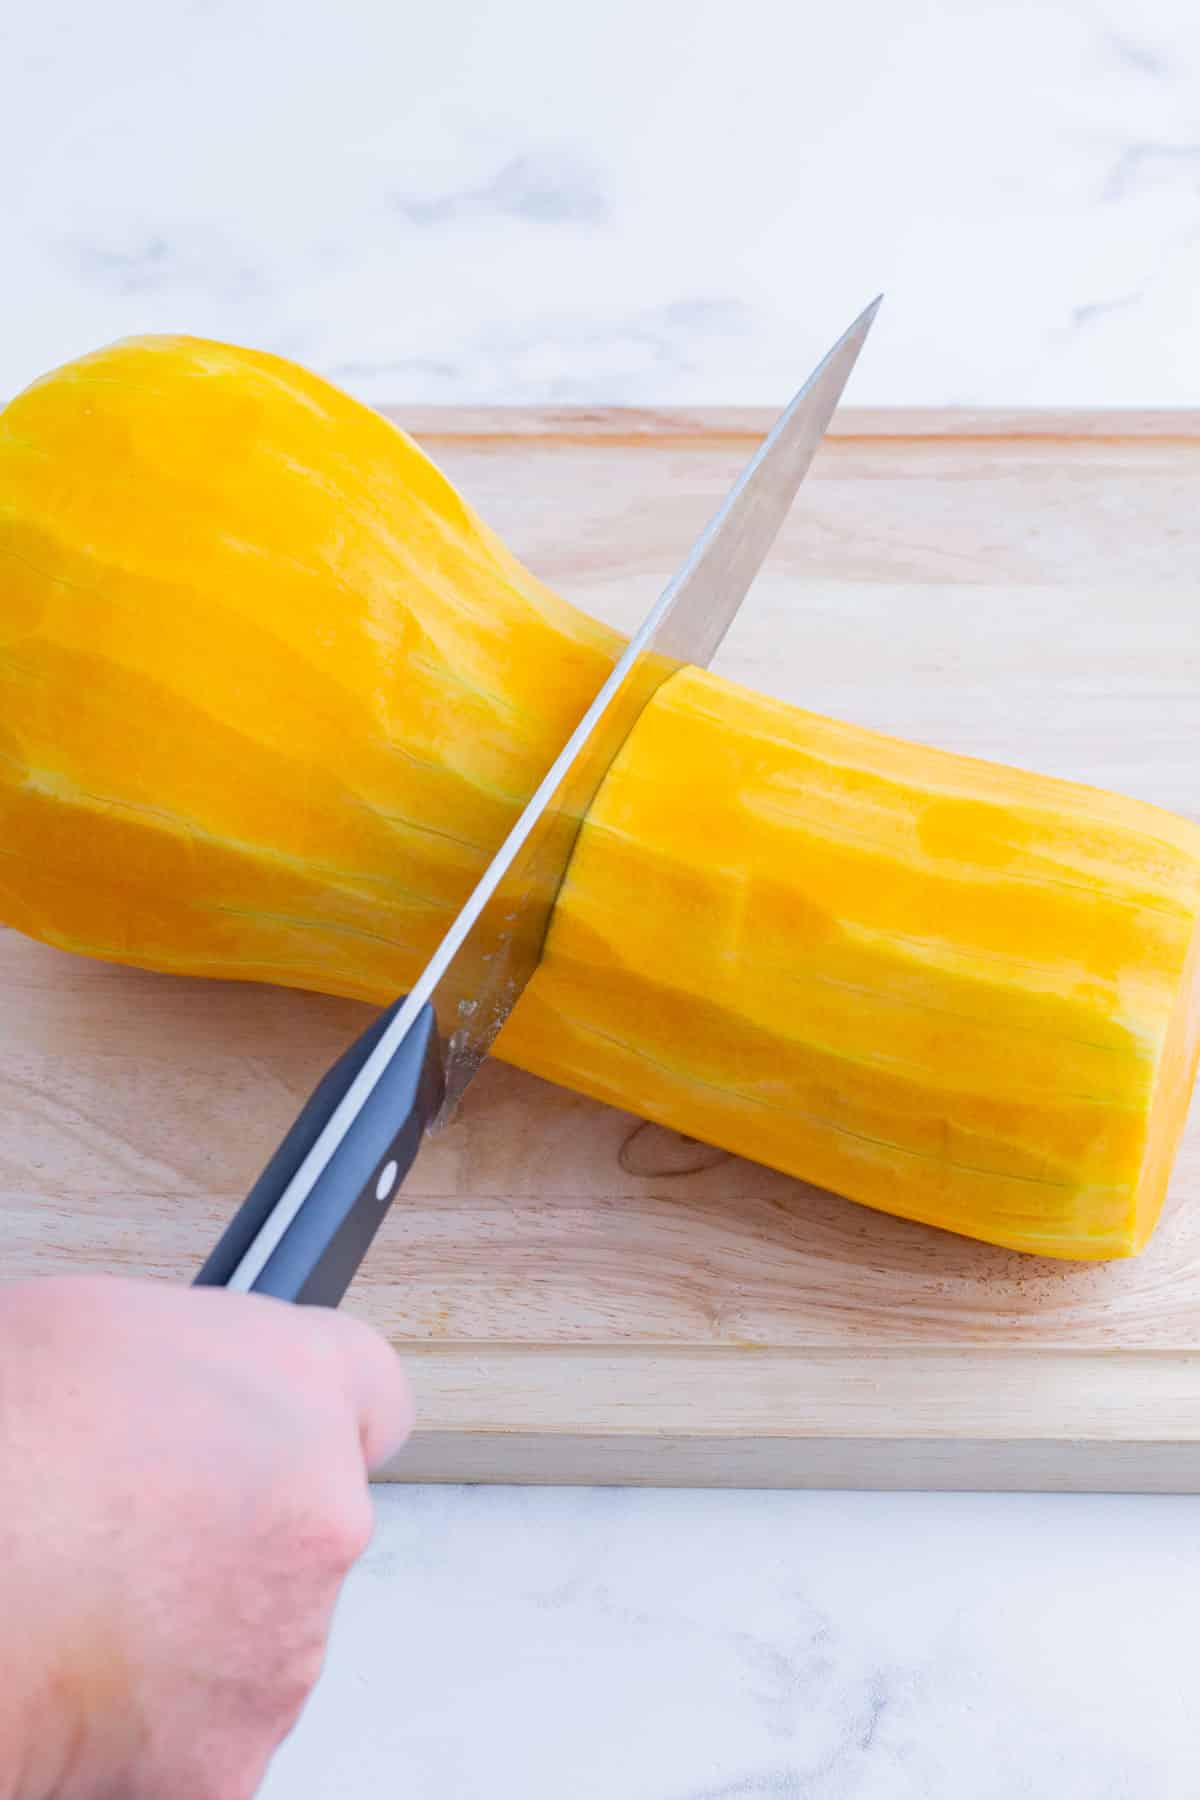 Butternut squash is cut in half.